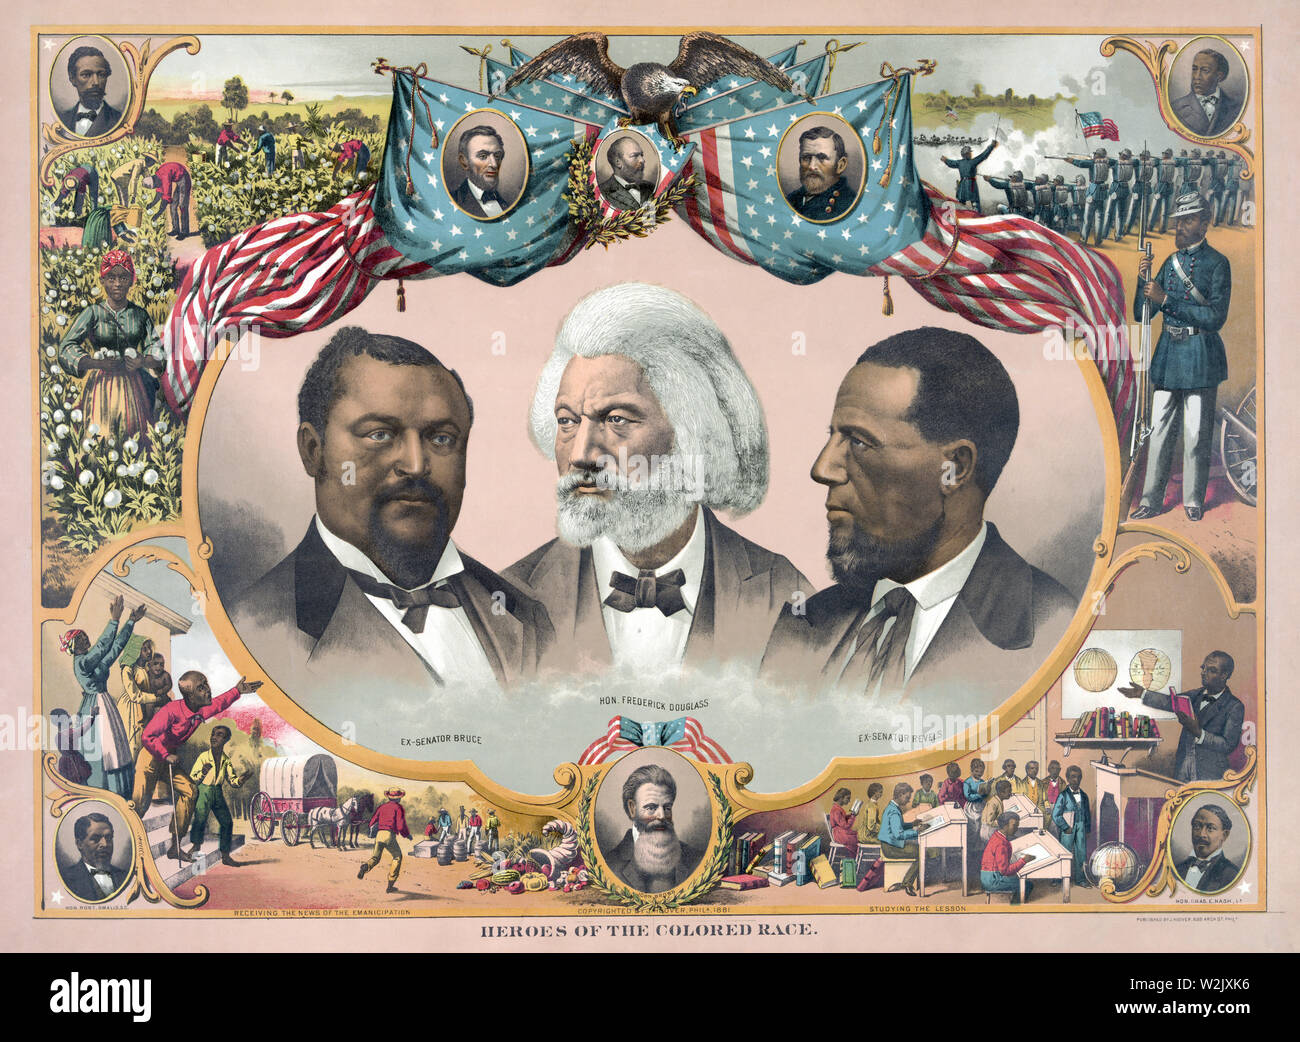 "Helden der Farbigen Rasse', mit Blanche Kelso Bruce, Frederick Douglass, und Hiram Rhoades Revels, Chromolithograph, von J.Hoover, Philadelphia, 1881 veröffentlicht. Stockfoto